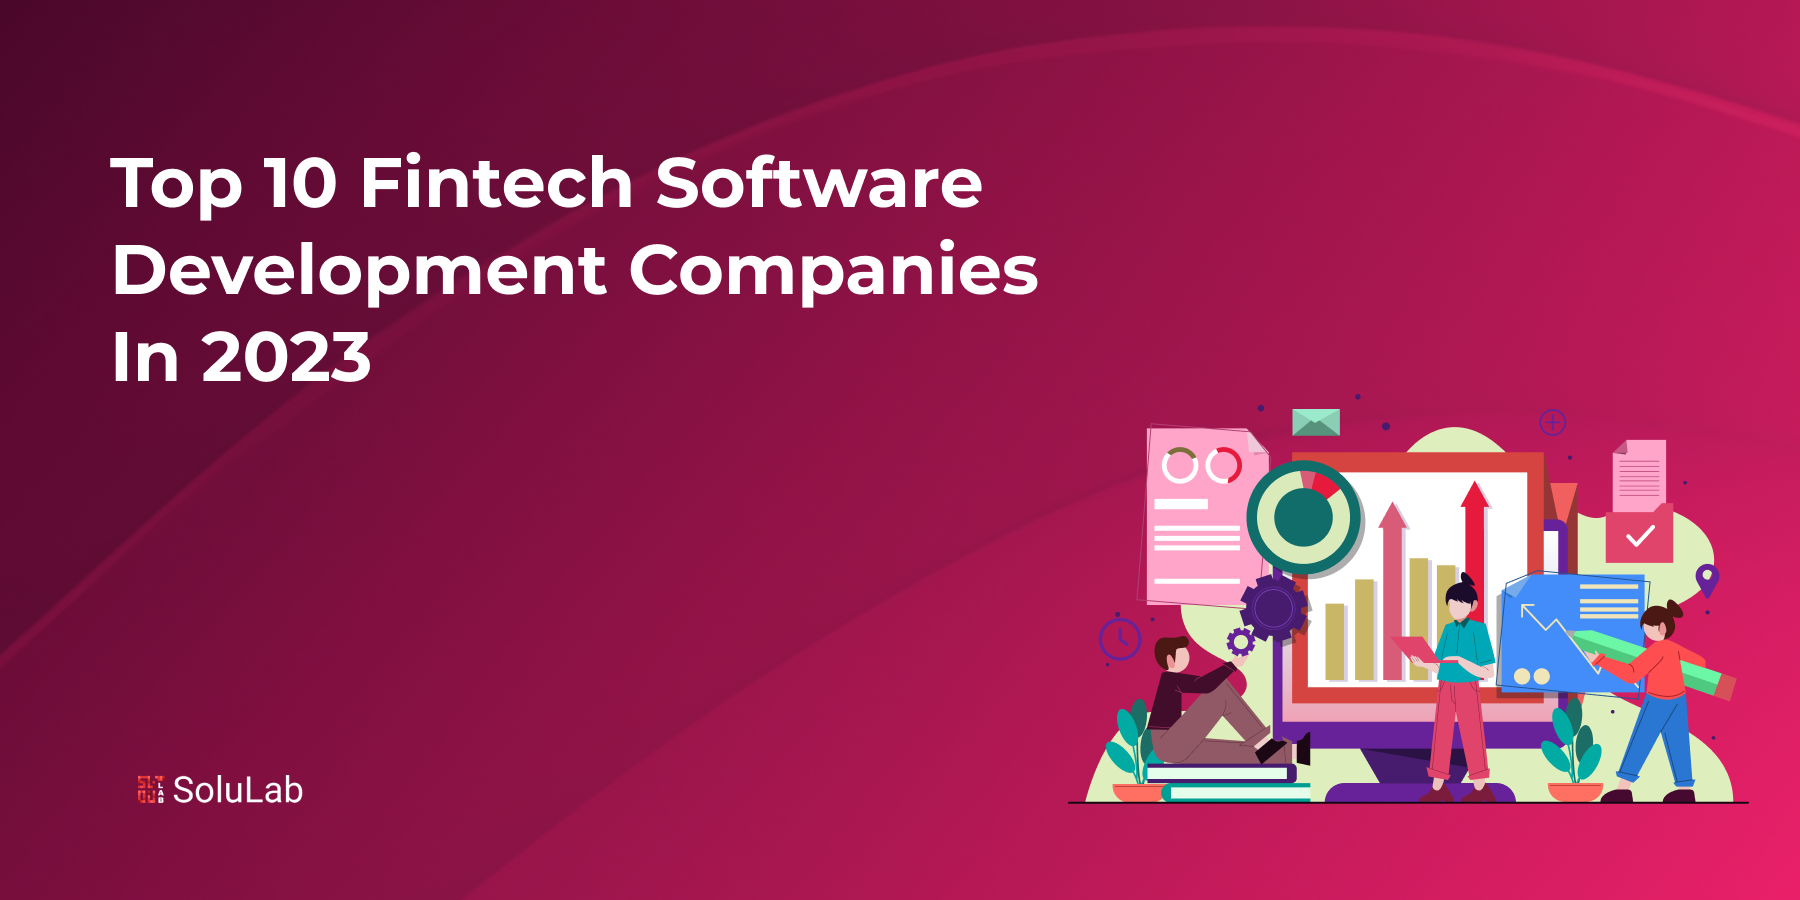 Top 10 Fintech Software Development Companies in 2023